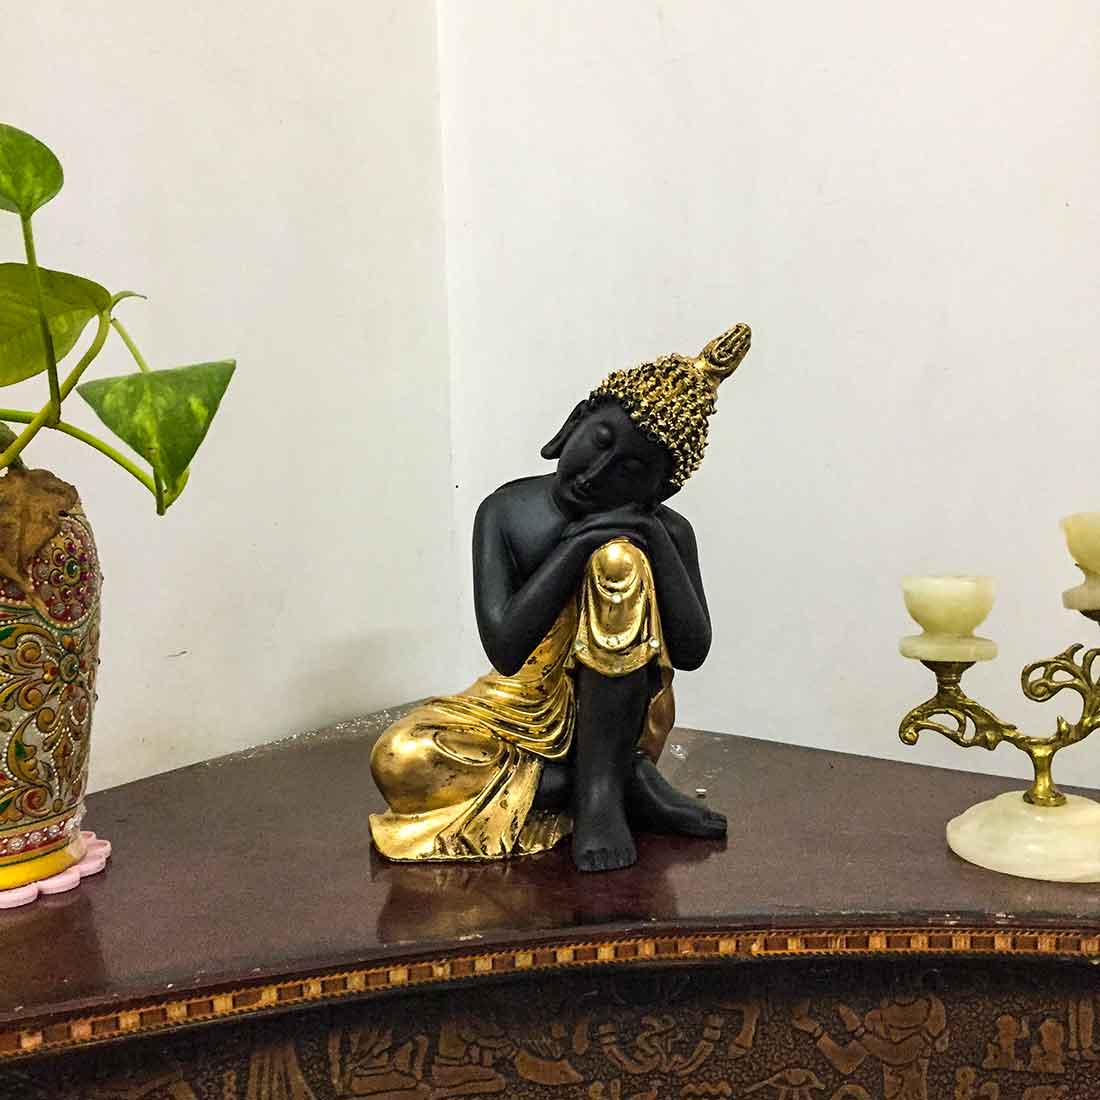 Golden Relaxing Buddha Statue - for Home Decor & Spiritual Living - 8 Inch - ApkaMart